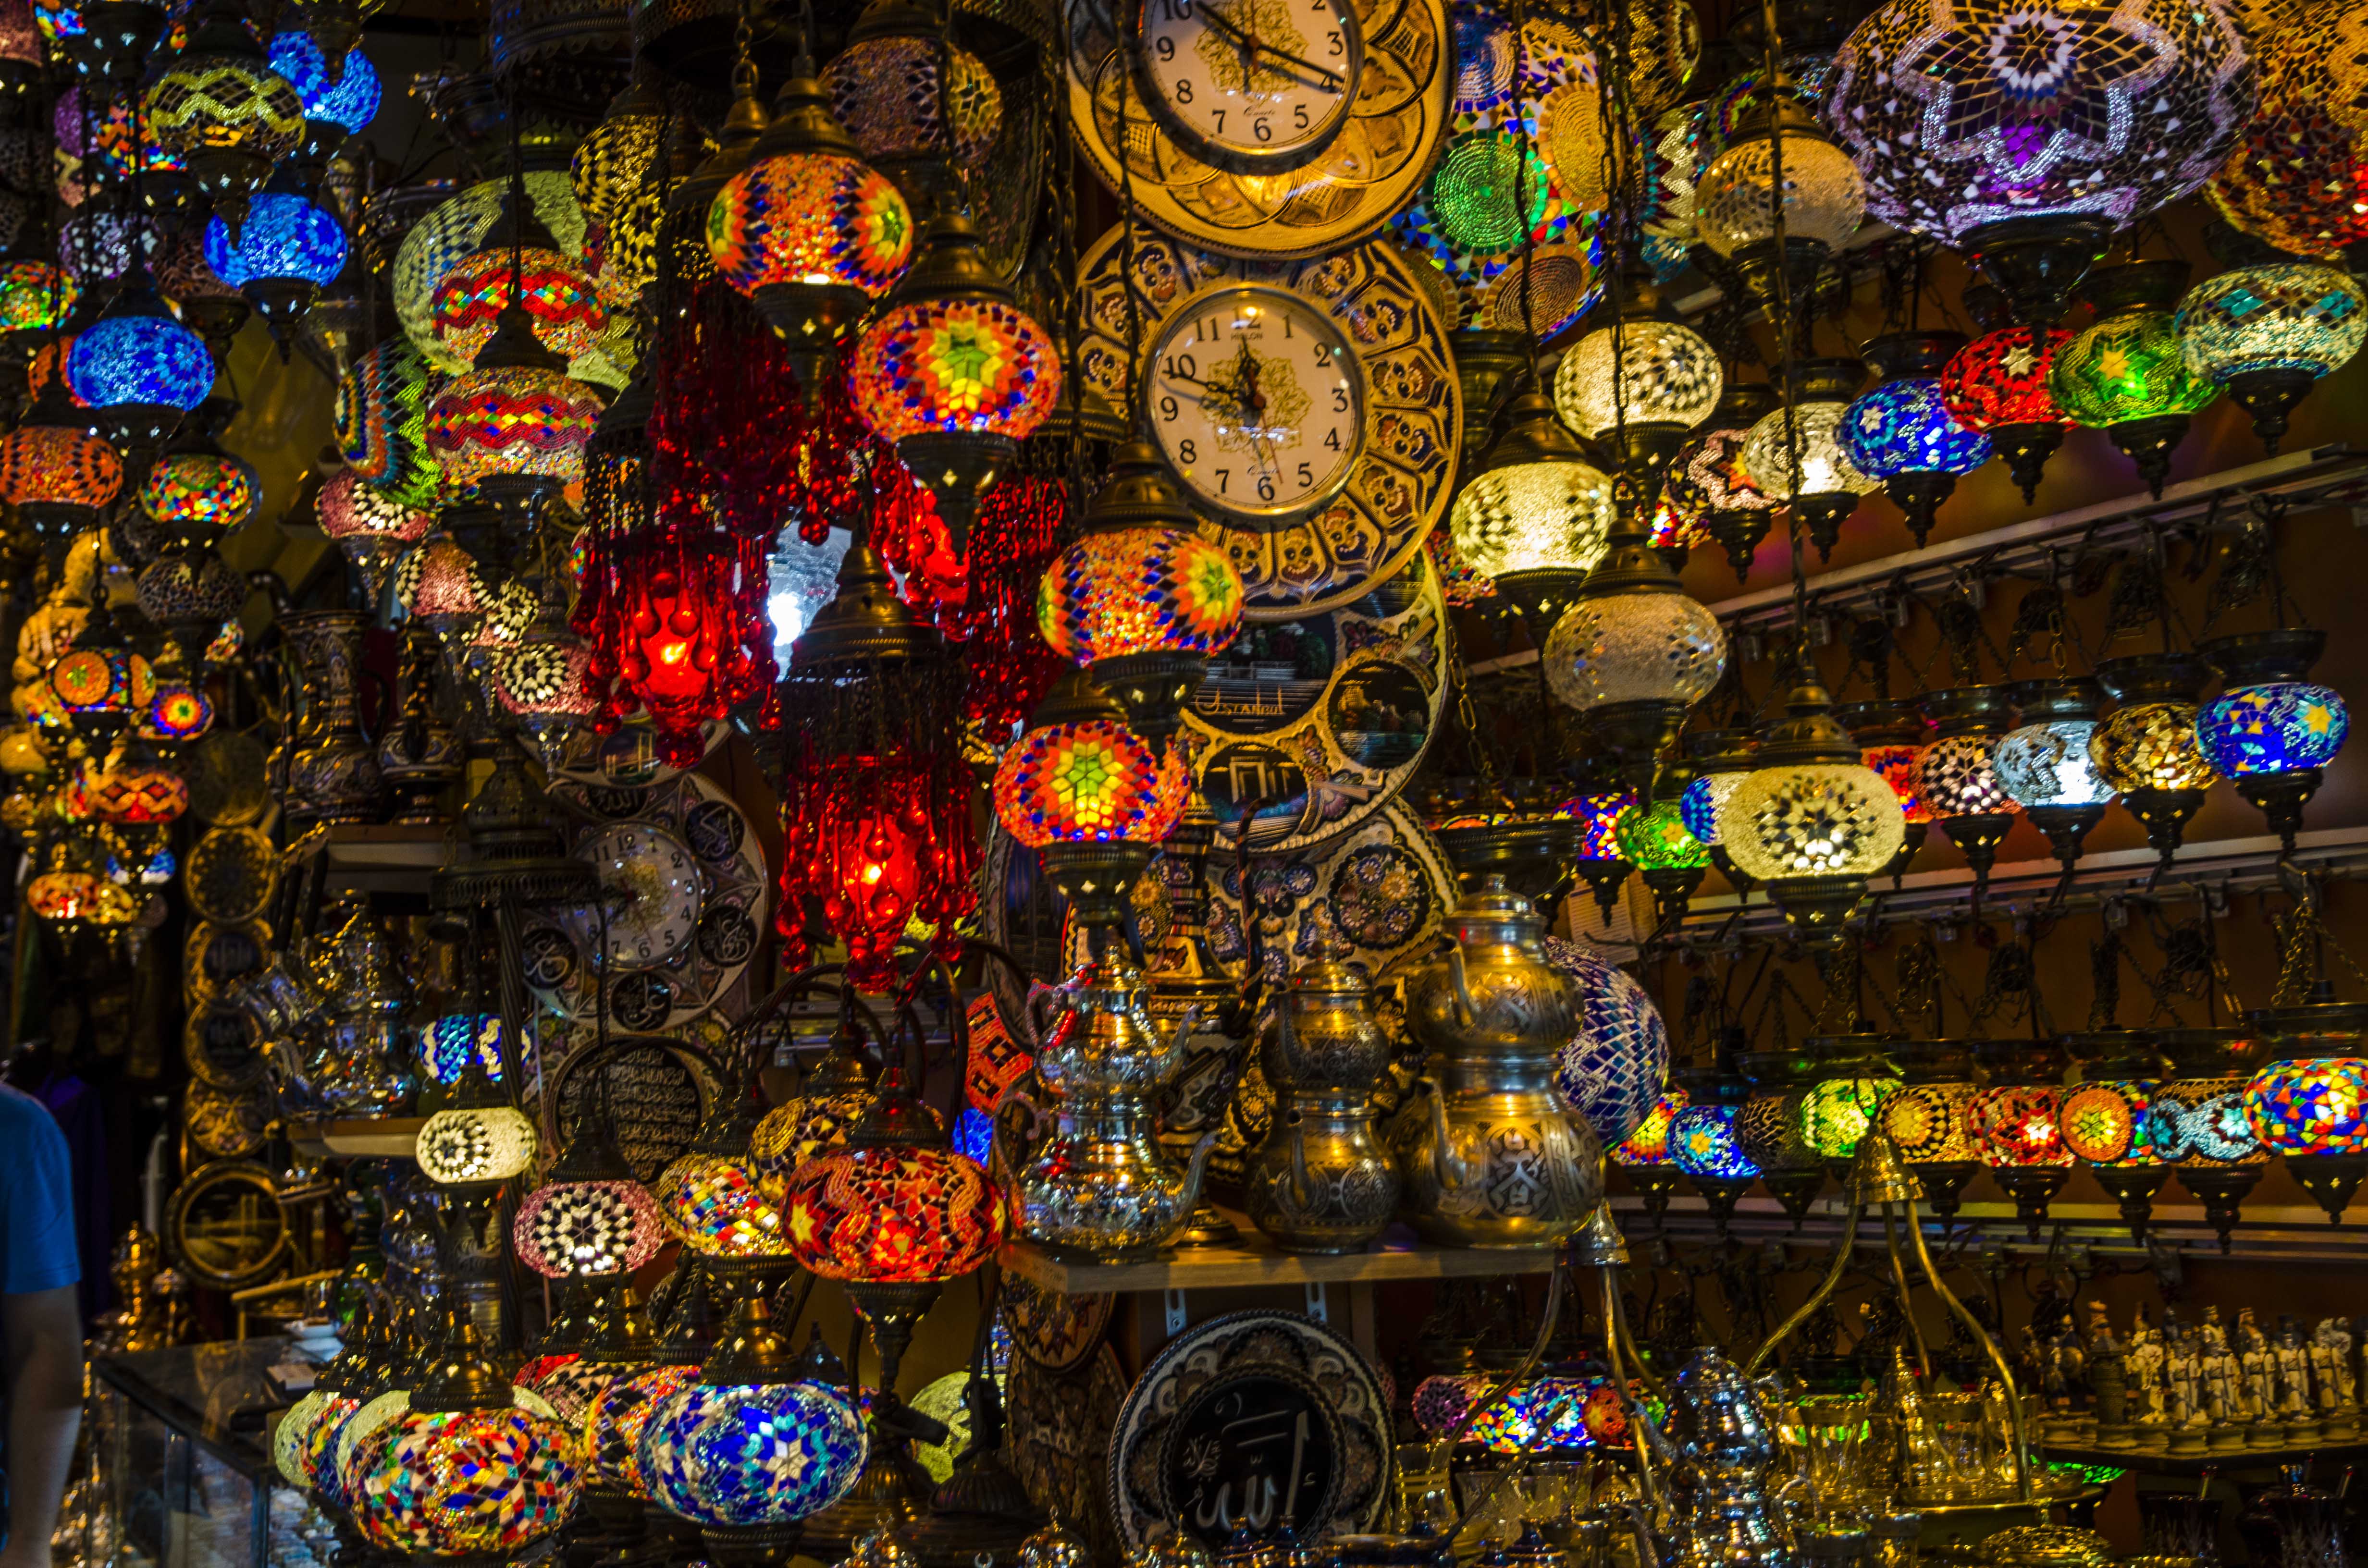 Gran bazar, lamps lamps lamps